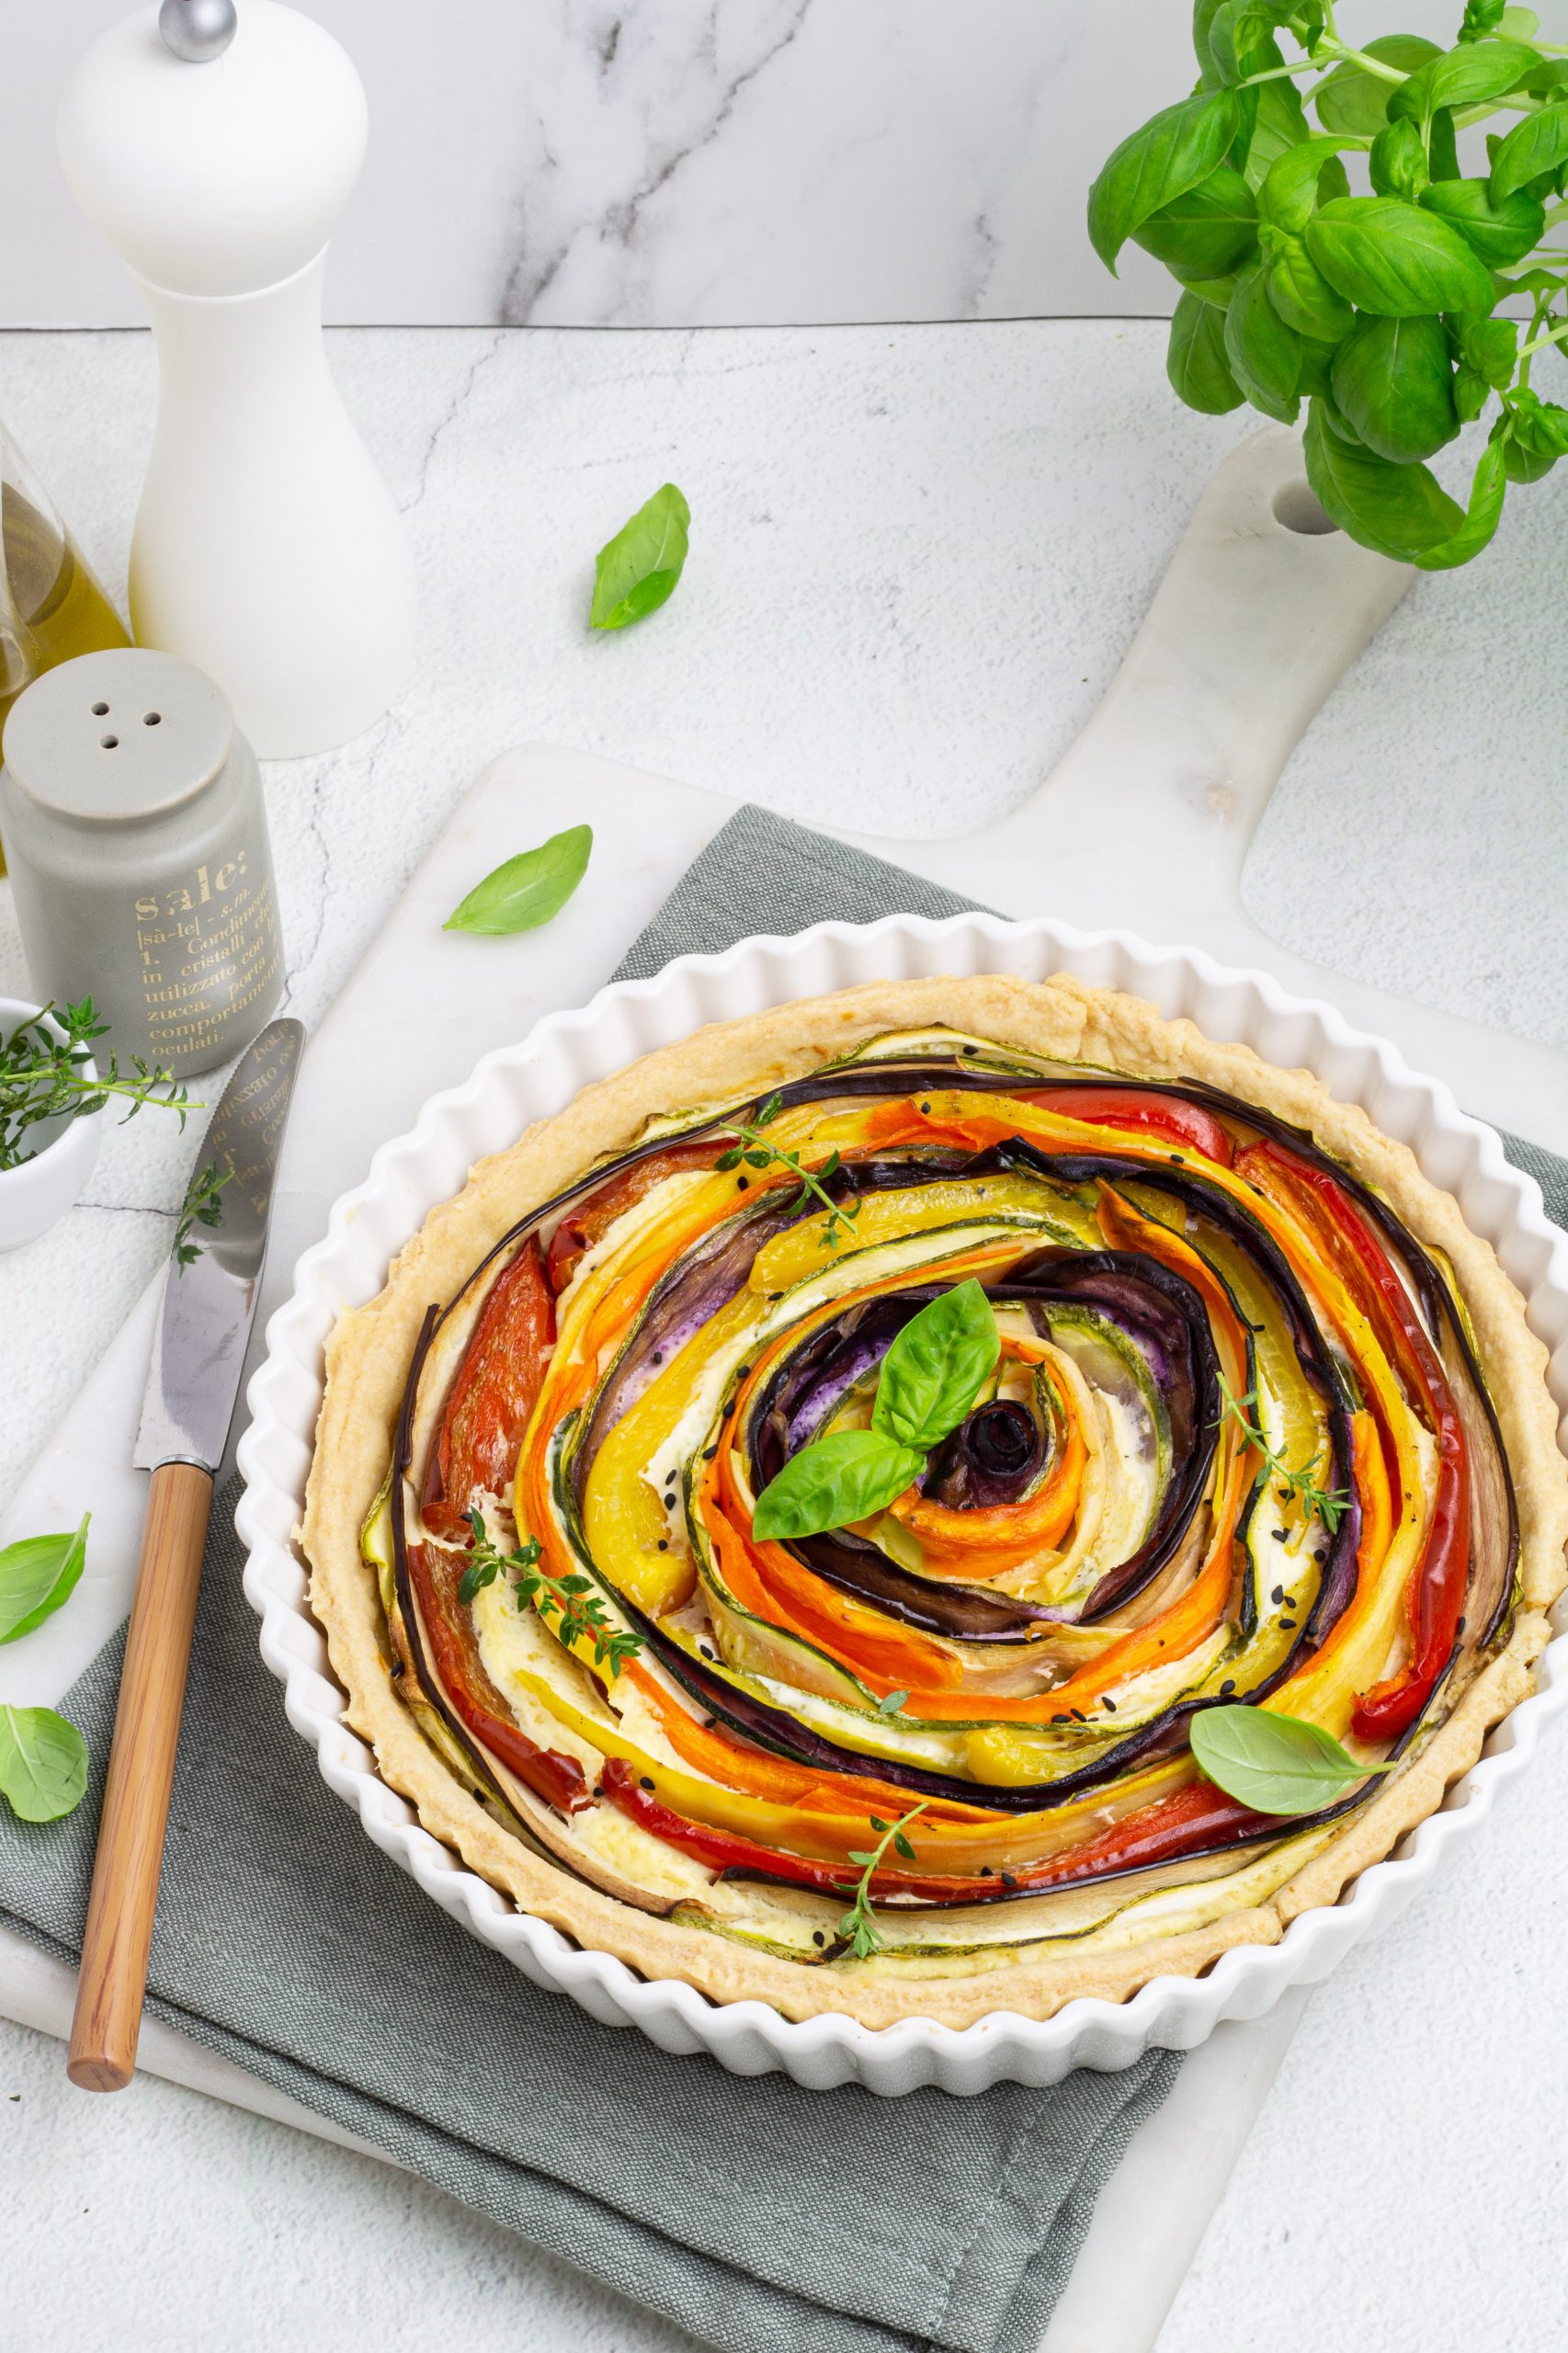 Torta salata con spirale di verdure